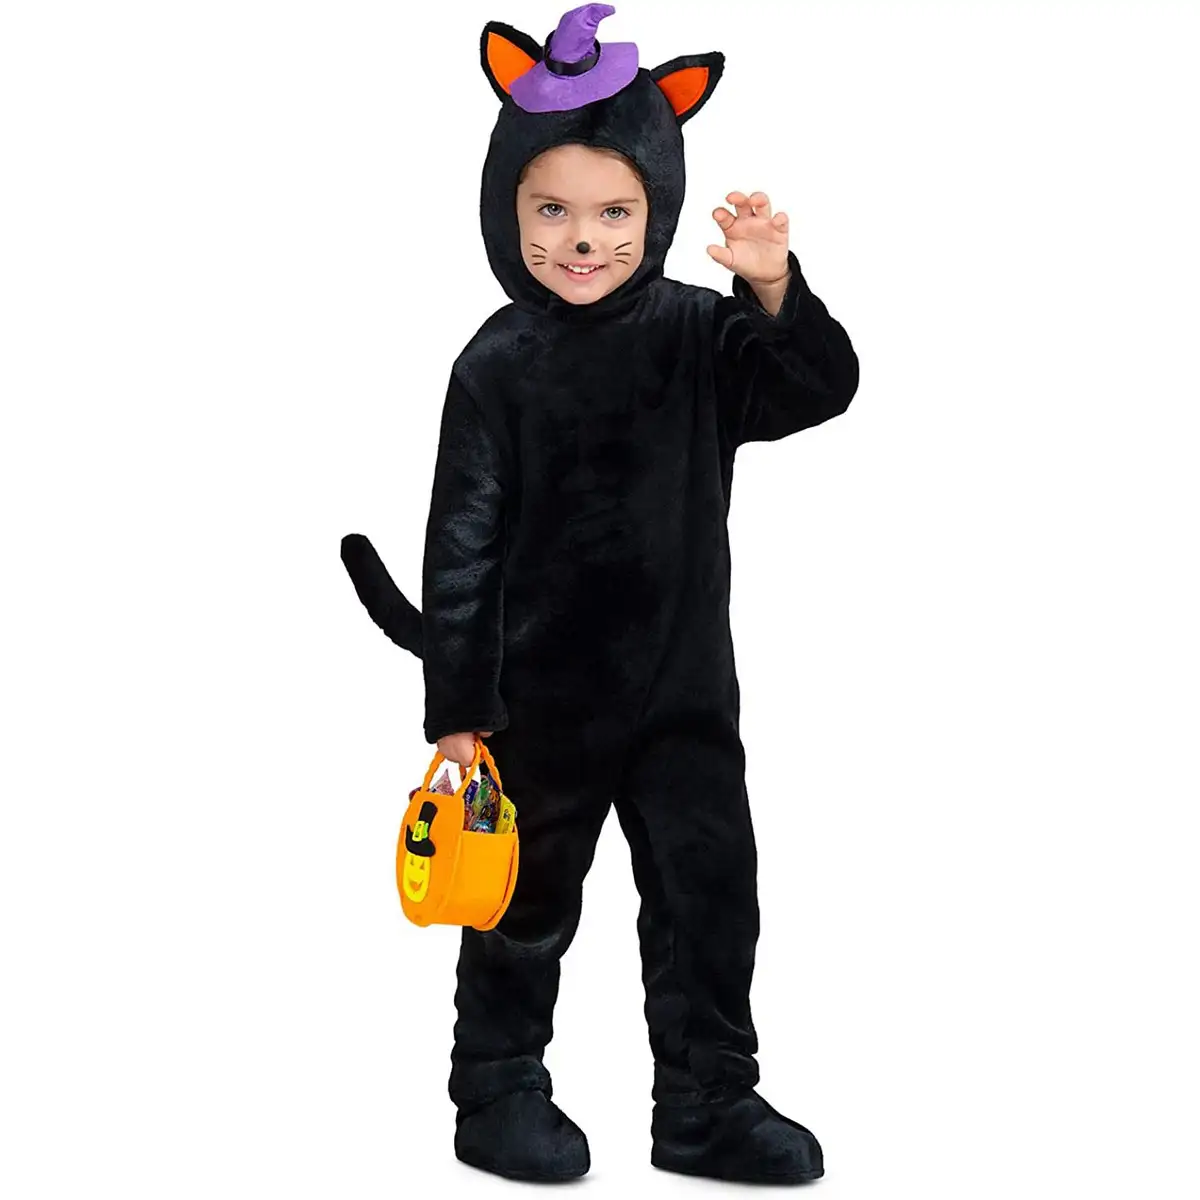 Costume de chat noir pour adulte, une pièce pour déguisement ou